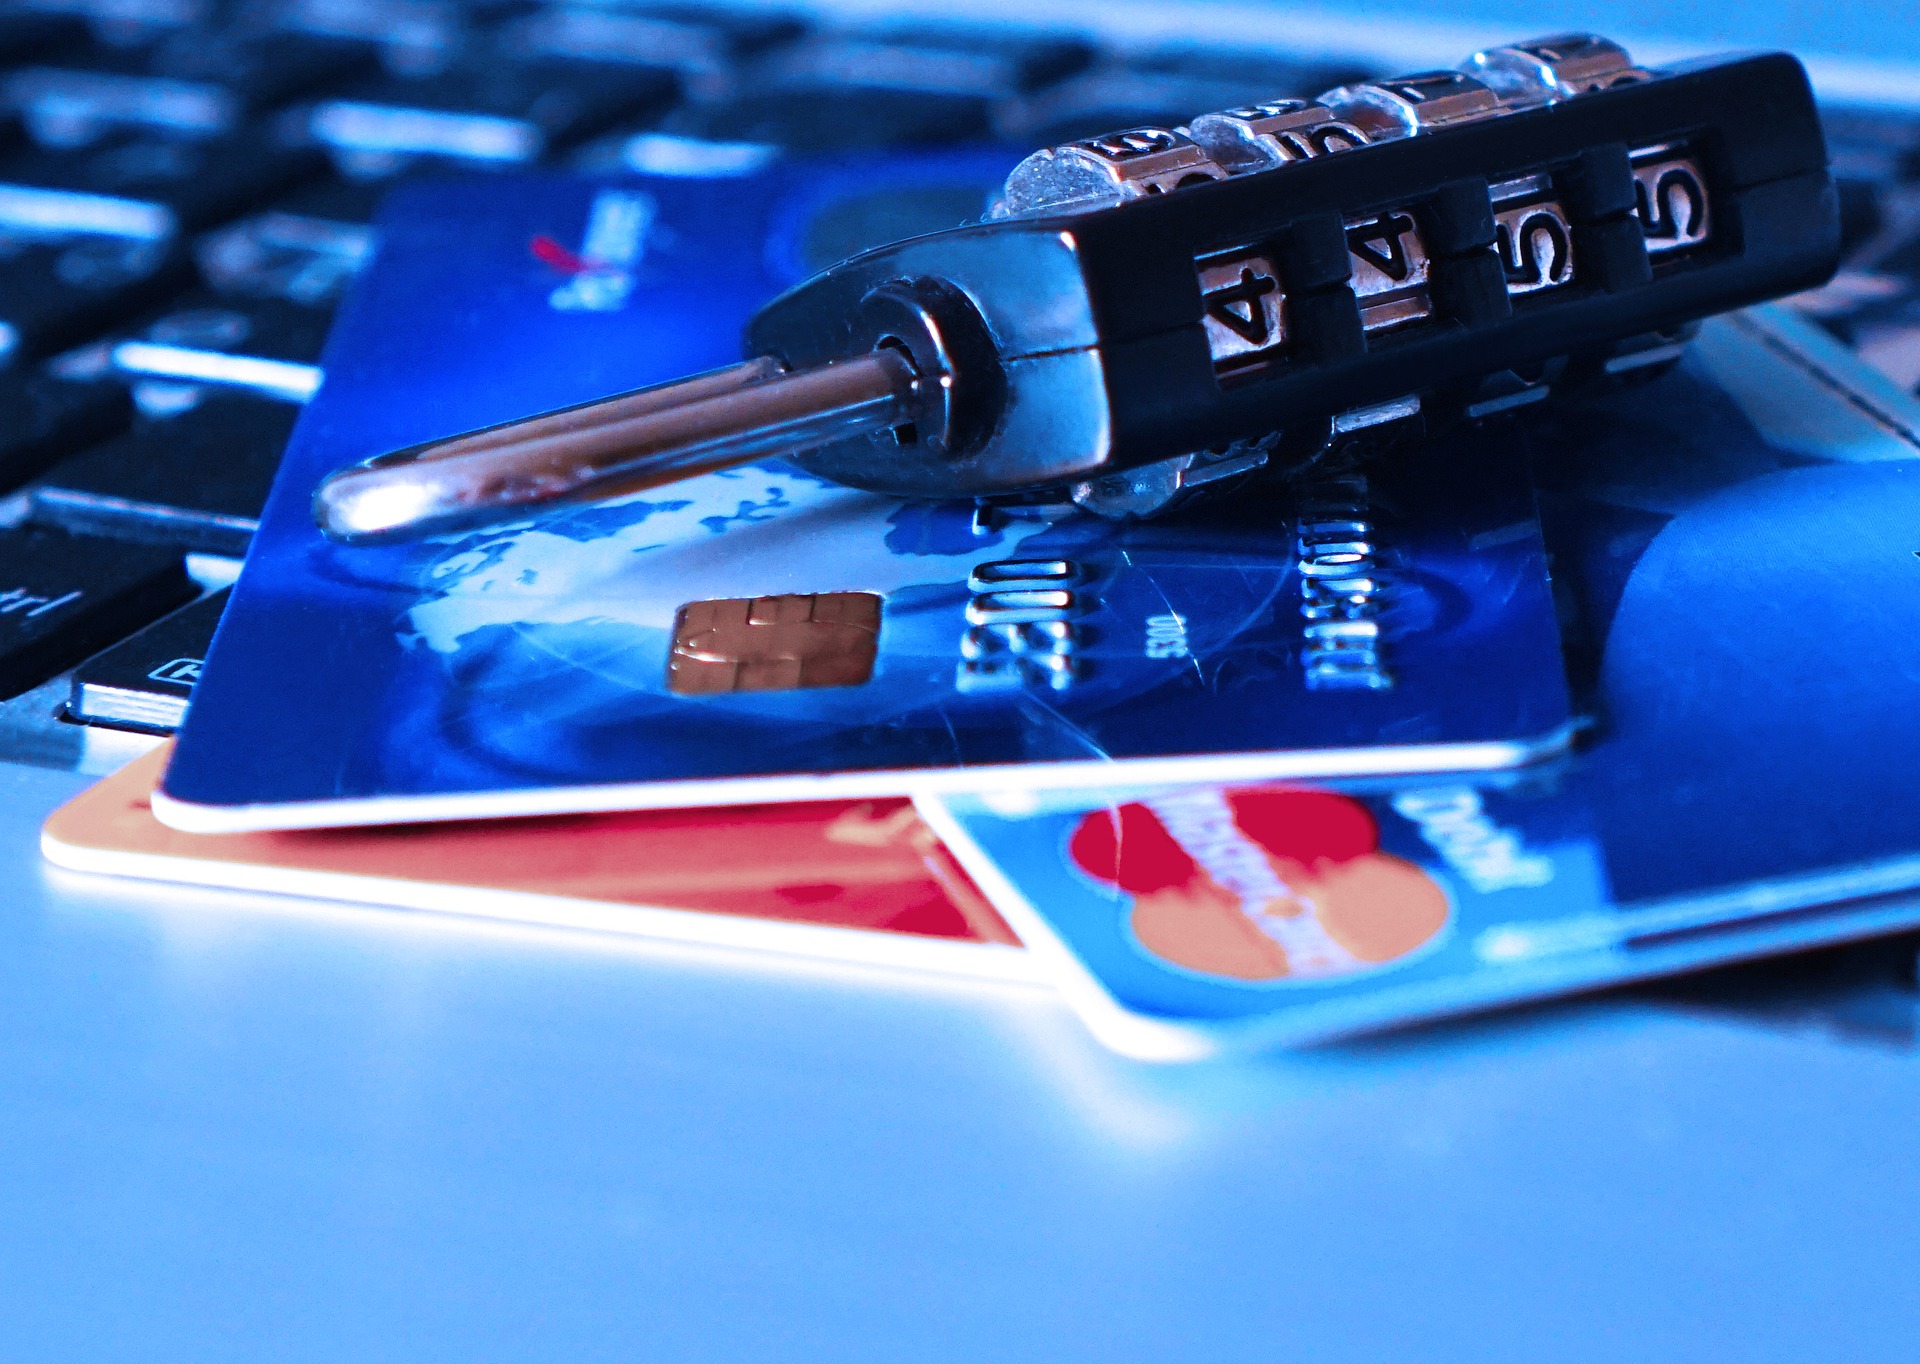 Aankopen ook met zakelijke creditcard automatisch verzekerd